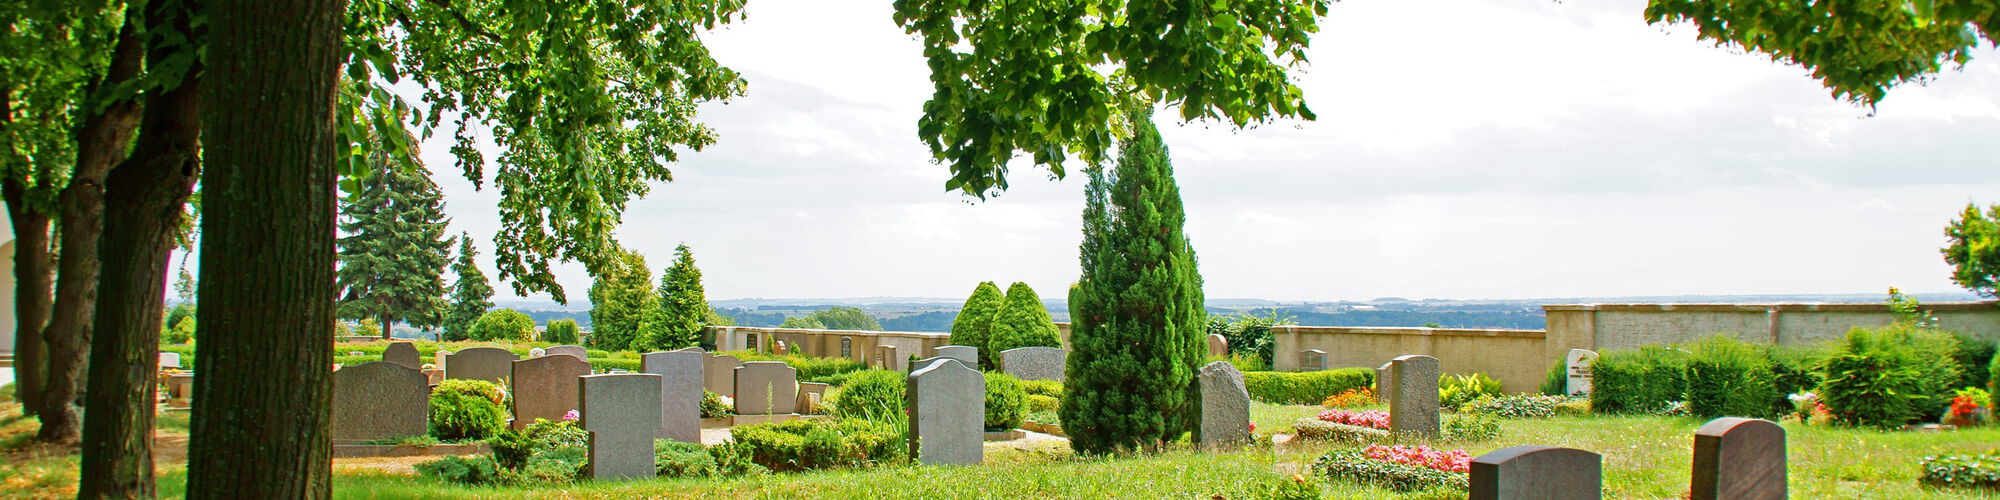 Blick auf Erdbestattungsgräber auf dem grünen Friedhof in Warmsen